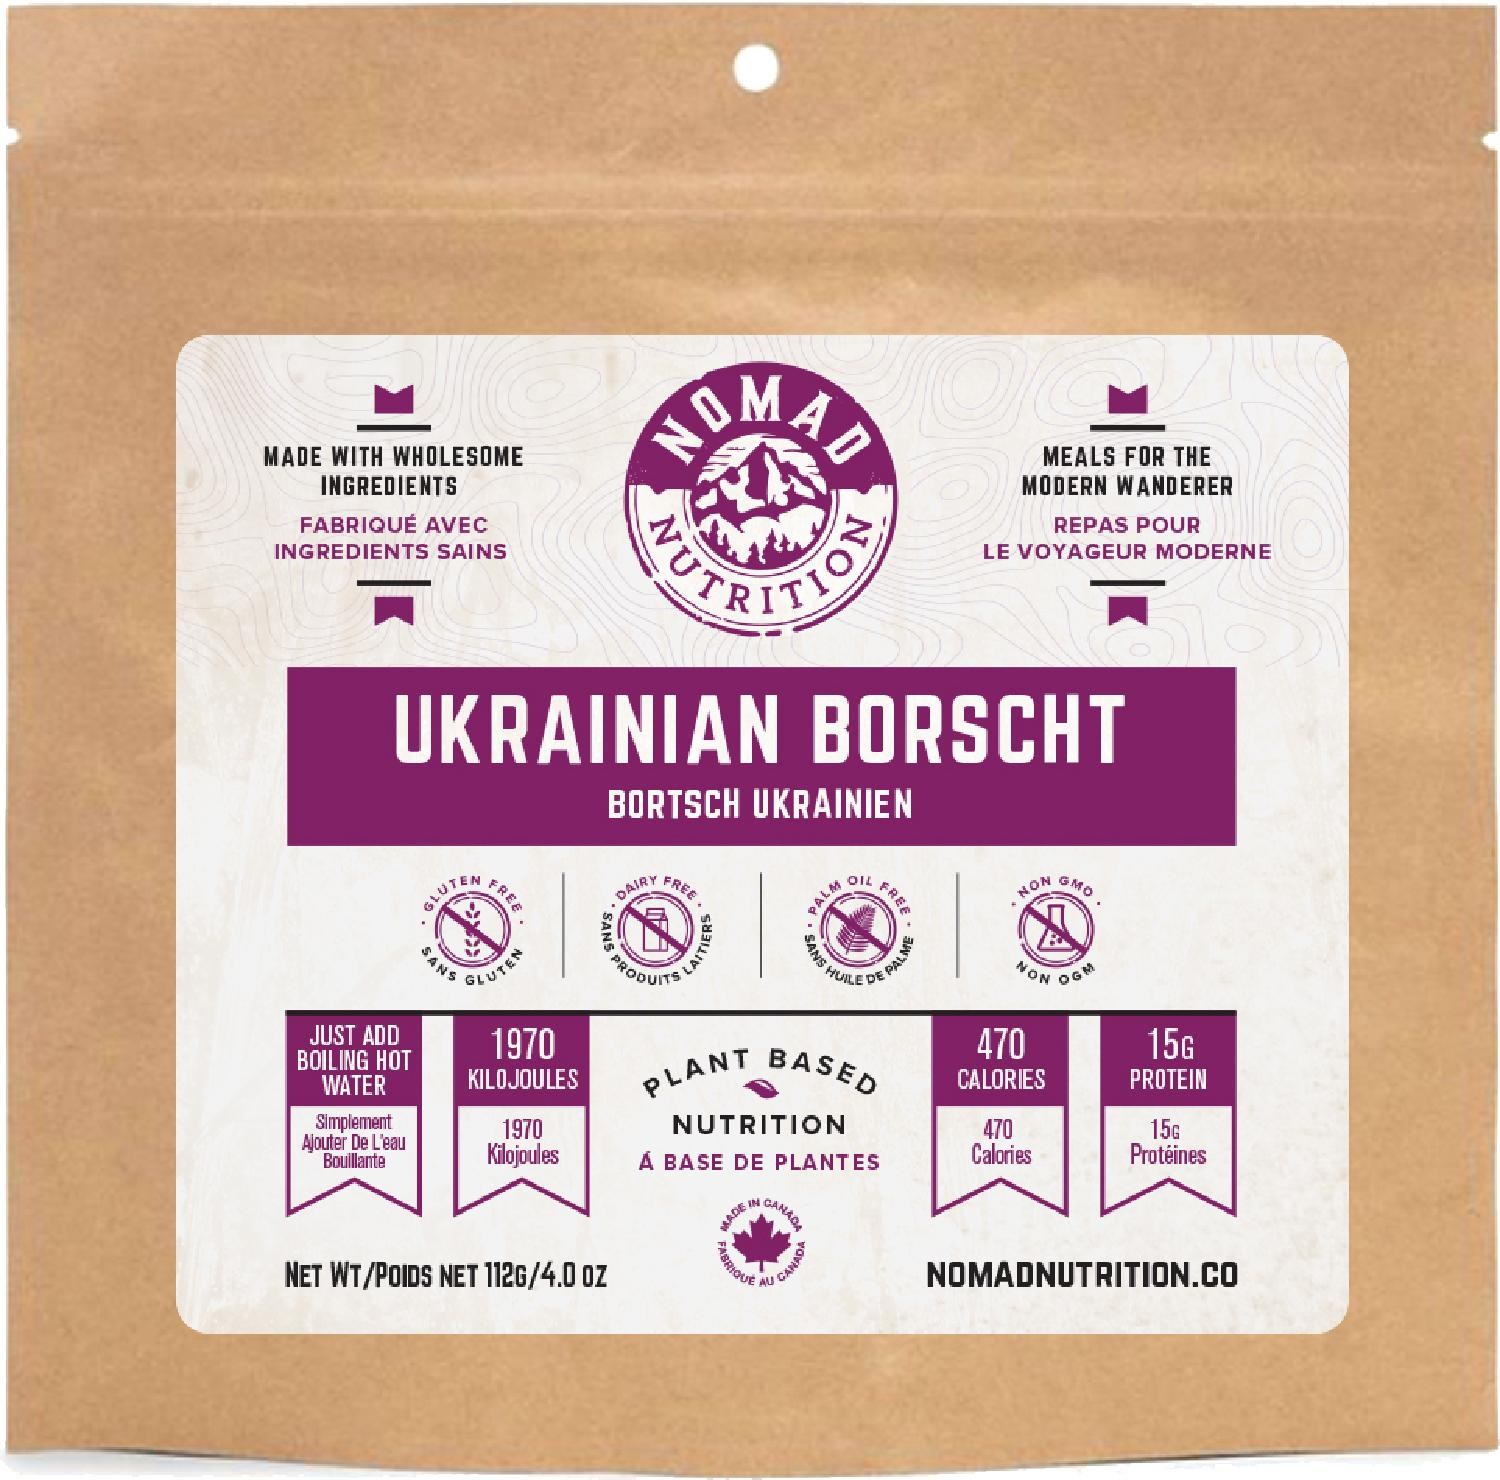 Украинский борщ – 1 порция Nomad Nutrition борщ со свежей капустой здоровое питание мичуринский наукоград 500г